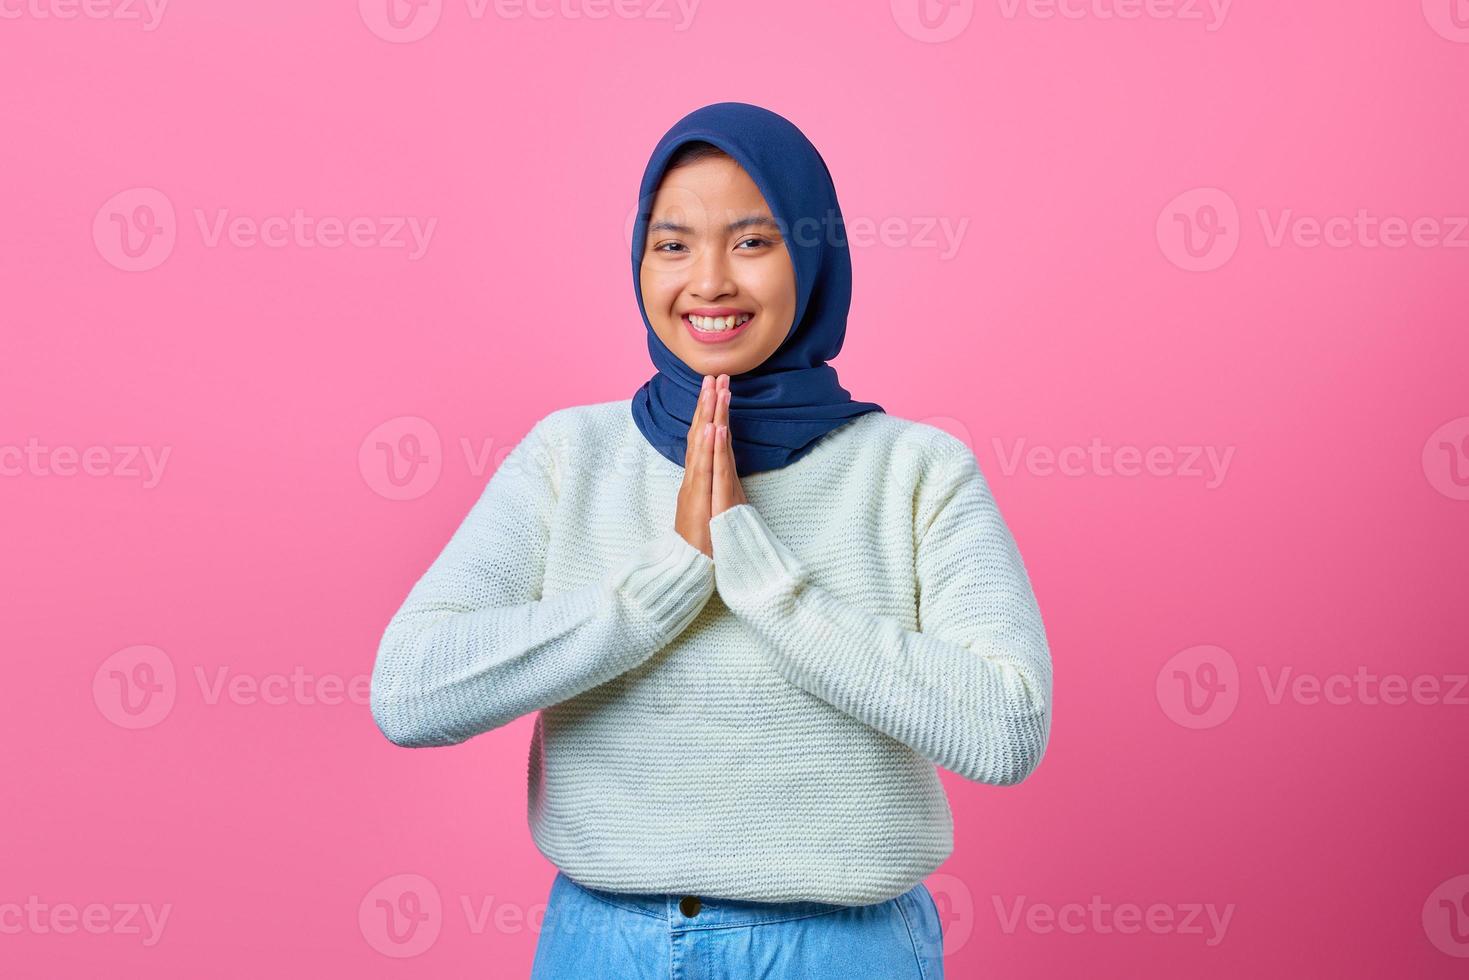 Porträt der lächelnden jungen asiatischen Frau, die betende Geste auf rosa Hintergrund zeigt foto